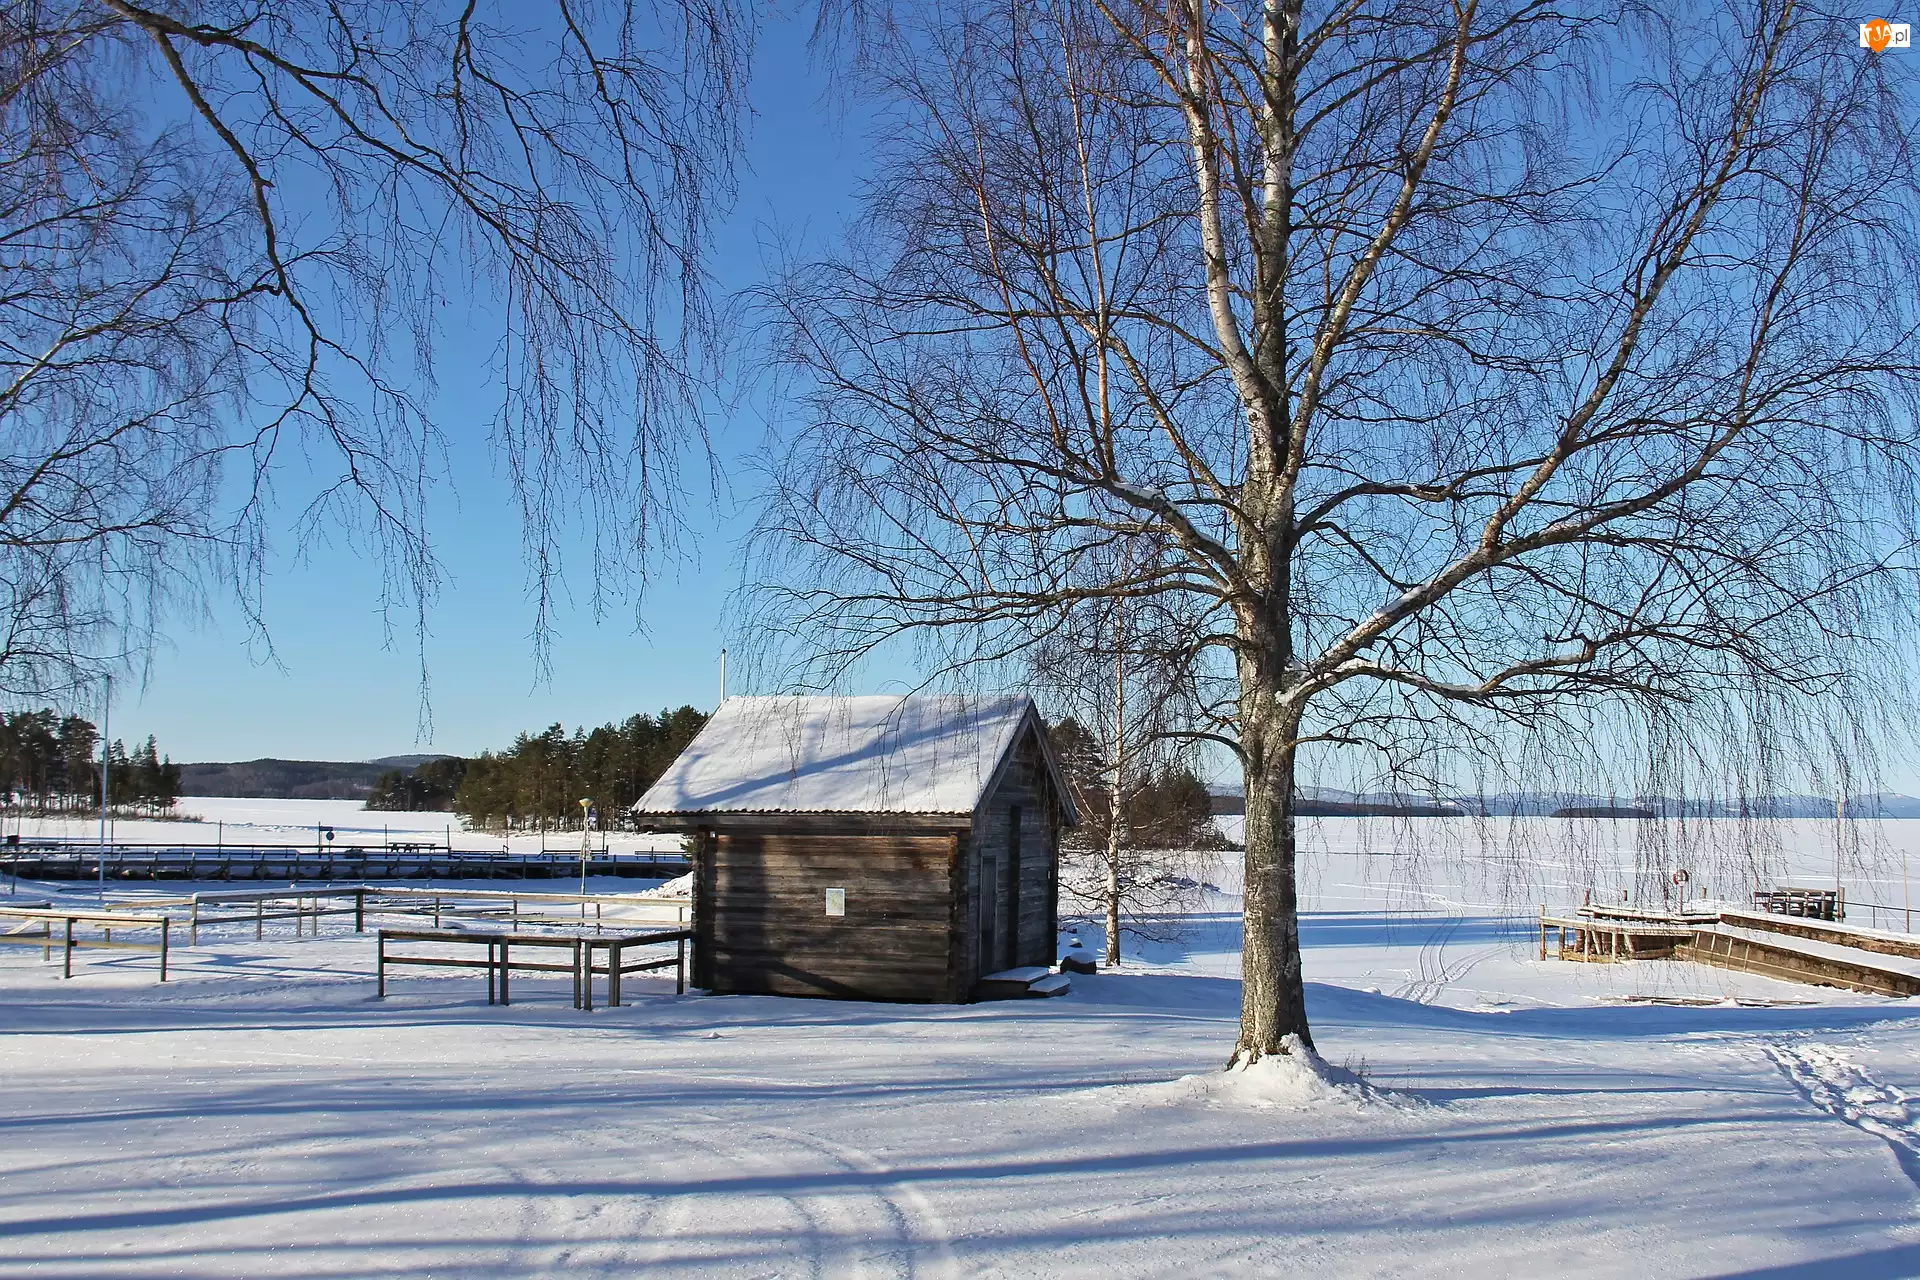 Szwecja, Jezioro, Tallberg, Dom, Szopa, Drzewa, Pomost, Zima, Śnieg